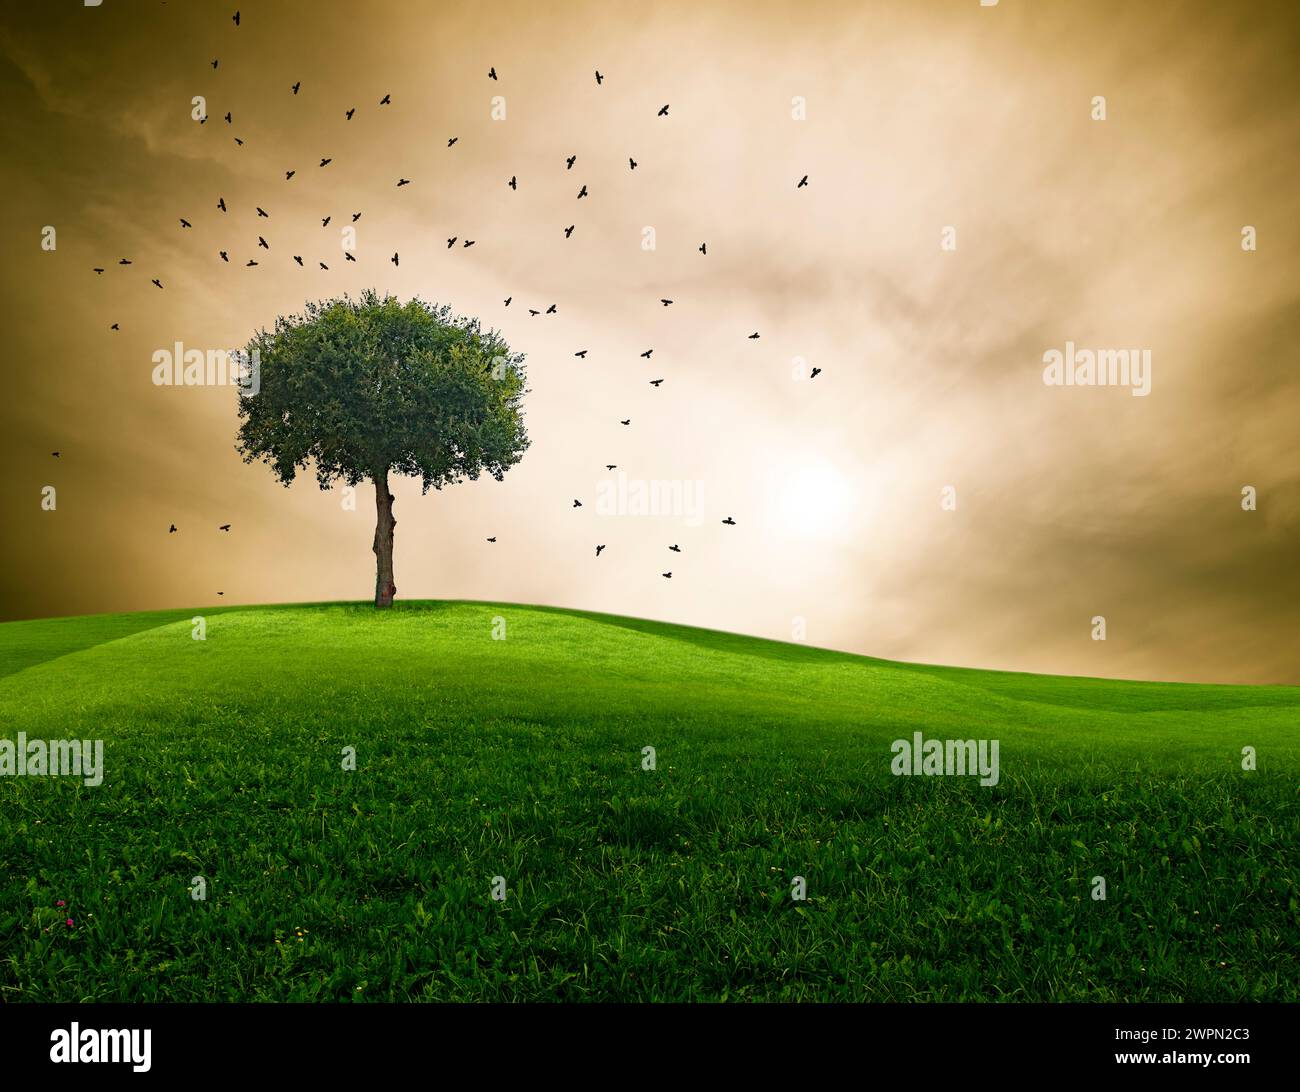 Baum in einer Landschaft mit dramatischem Himmel und hoch aufragenden Raben [M] Stockfoto